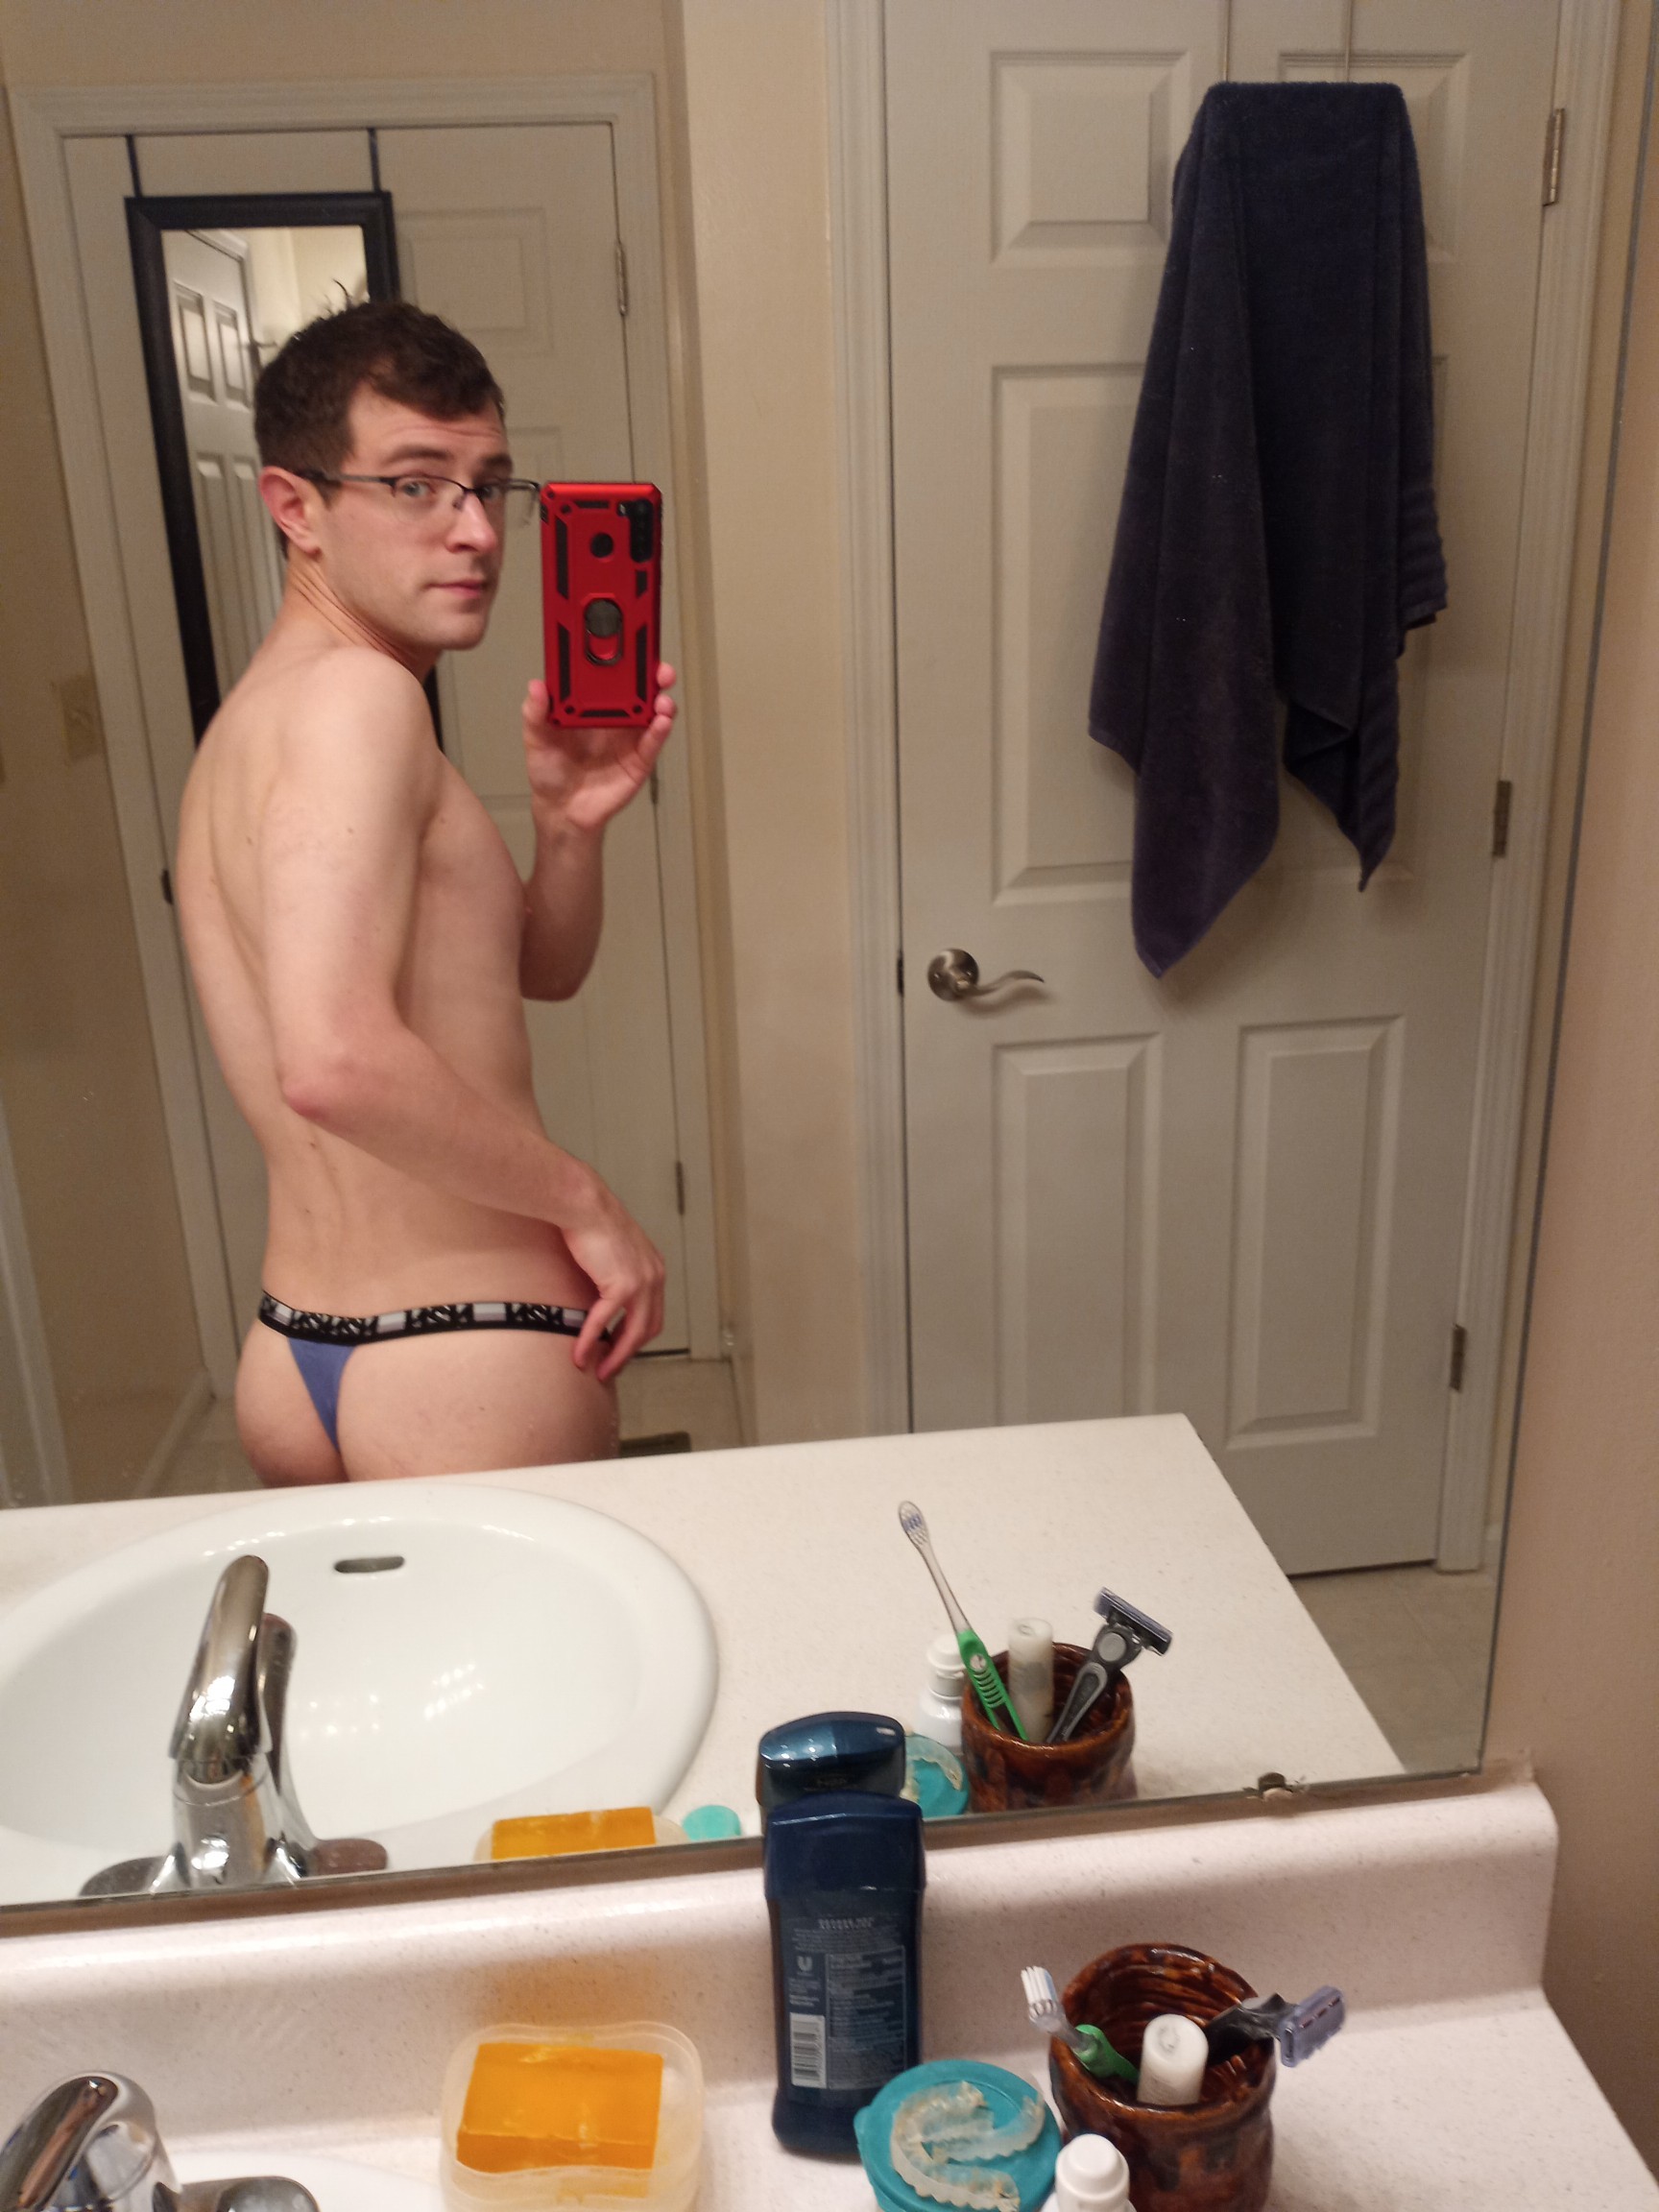 Porn photo bikinithonglover:Got a new n2n a thong and